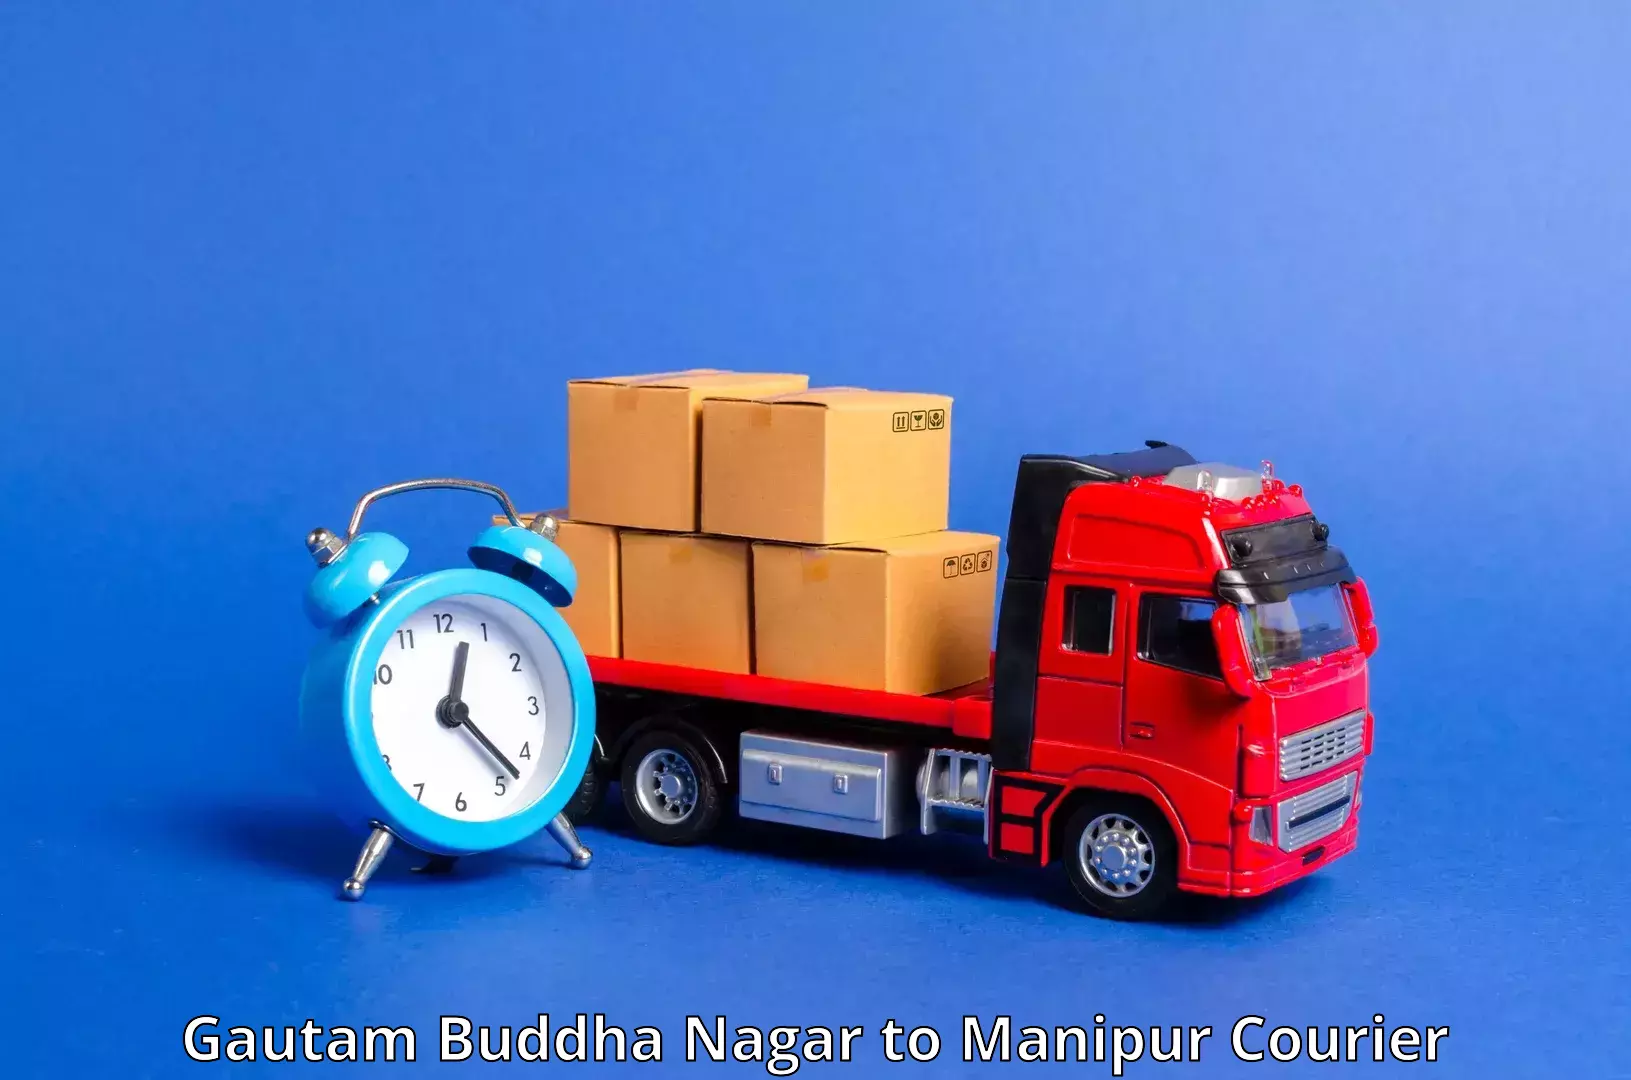 Large package courier Gautam Buddha Nagar to Moirang